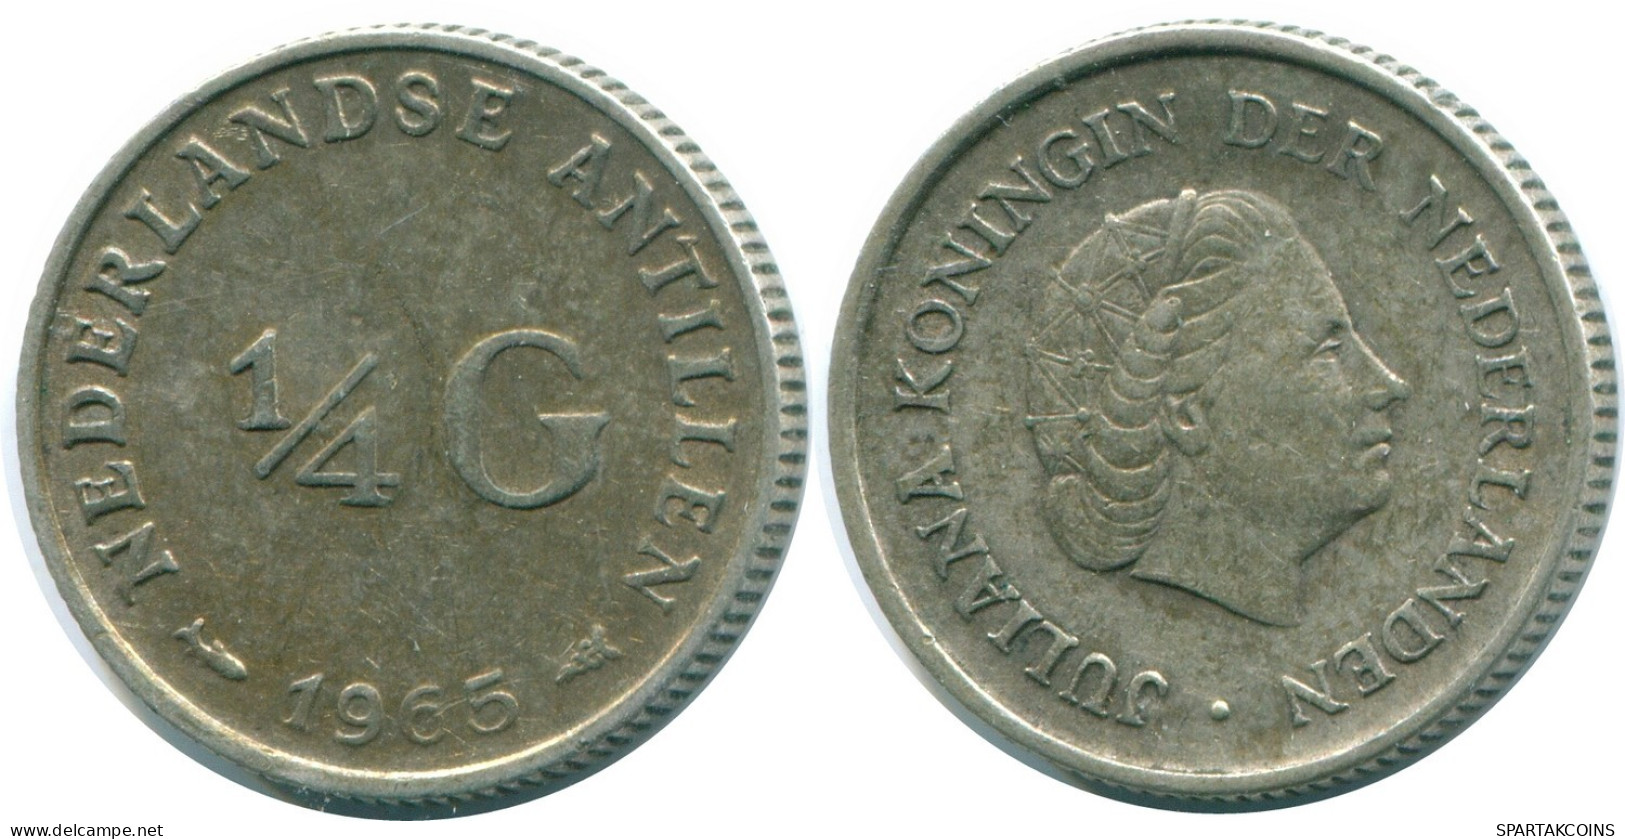 1/4 GULDEN 1965 NIEDERLÄNDISCHE ANTILLEN SILBER Koloniale Münze #NL11394.4.D.A - Nederlandse Antillen